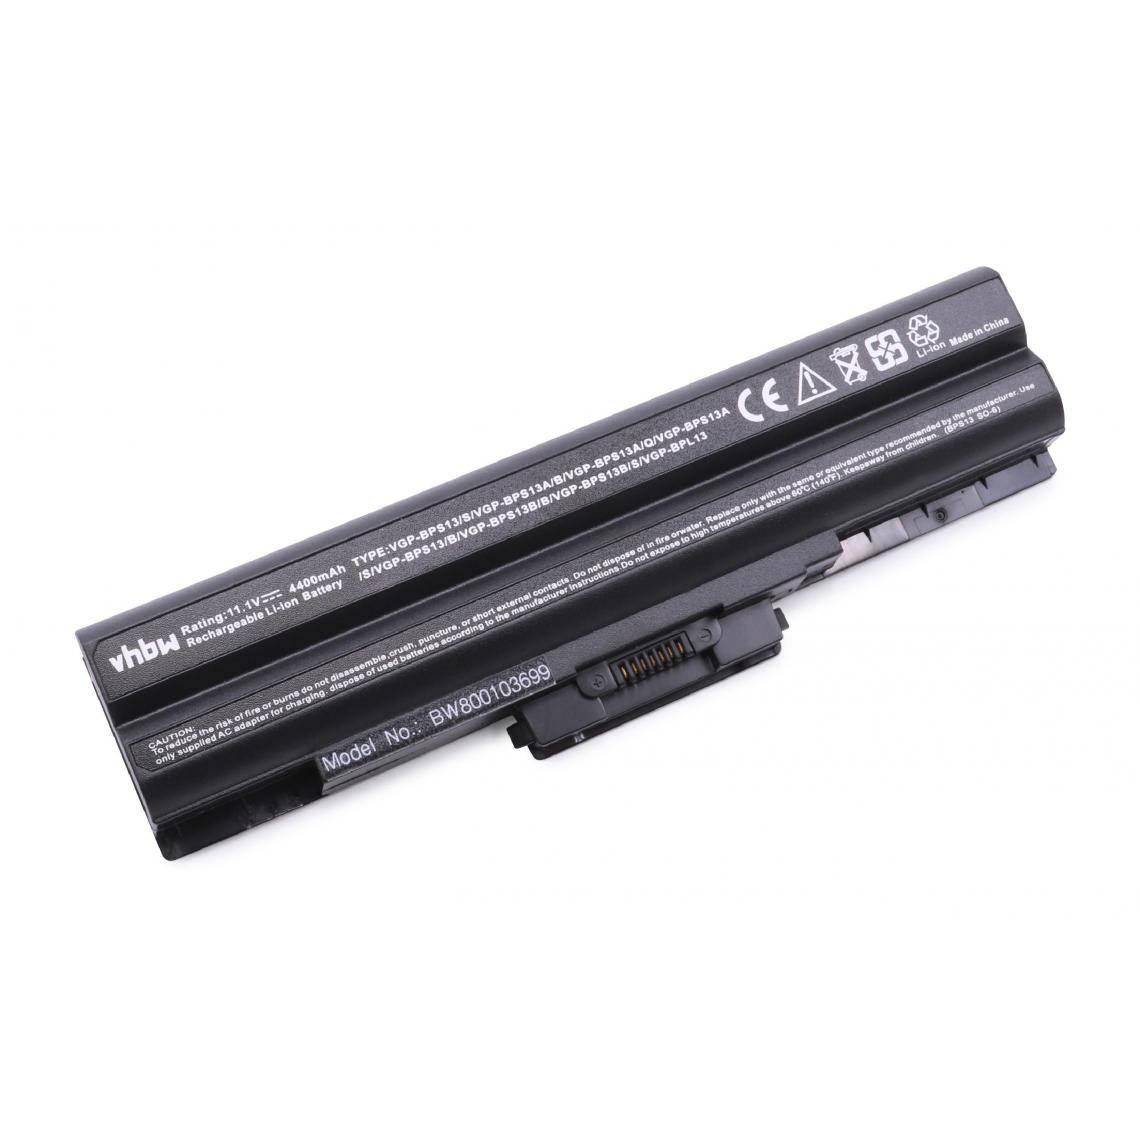 Vhbw - vhbw Batterie compatible avec Sony Vaio VGN-TX26C/W, VGN-TX27CP/B, VGN-TX27CP/L, VGN-TX28CP/L ordinateur portable (4400mAh, 11,1V, noir) - Batterie PC Portable